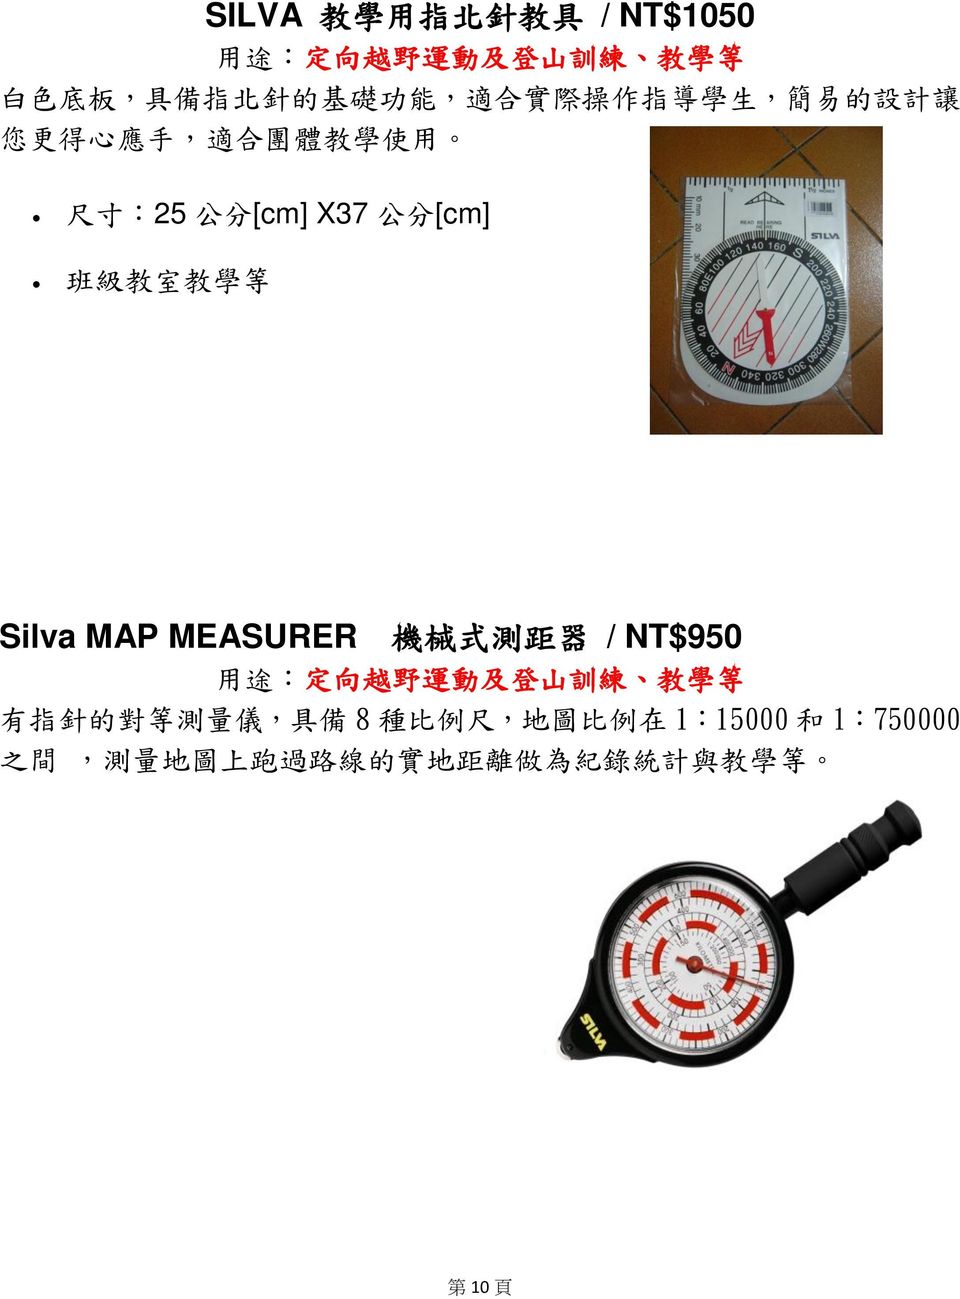 等 Silva MAP MEASURER 機 械 式 測 距 器 / NT$950 用 途 : 定 向 越 野 運 動 及 登 山 訓 練 教 學 等 有 指 針 的 對 等 測 量 儀, 具 備